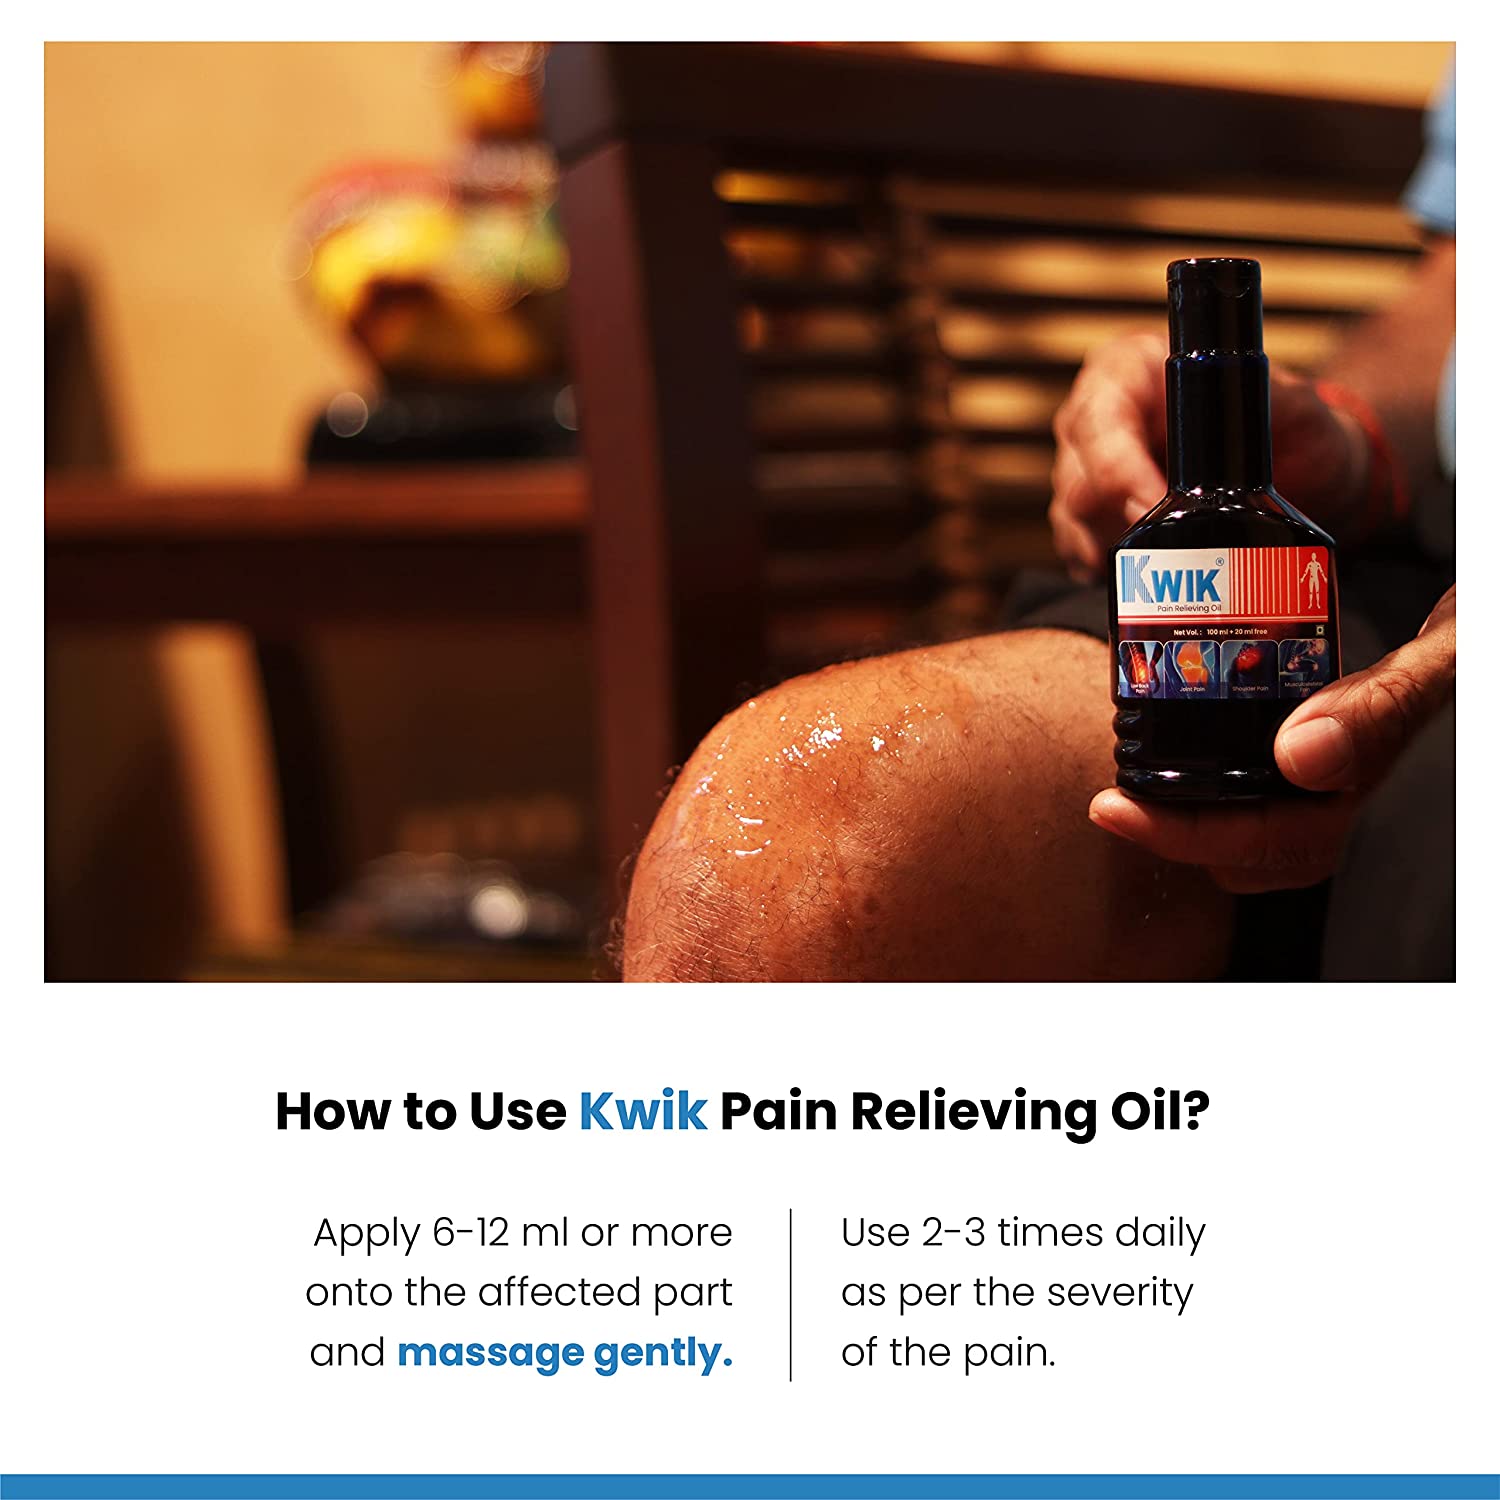 Kwik Pain Relieving Oil